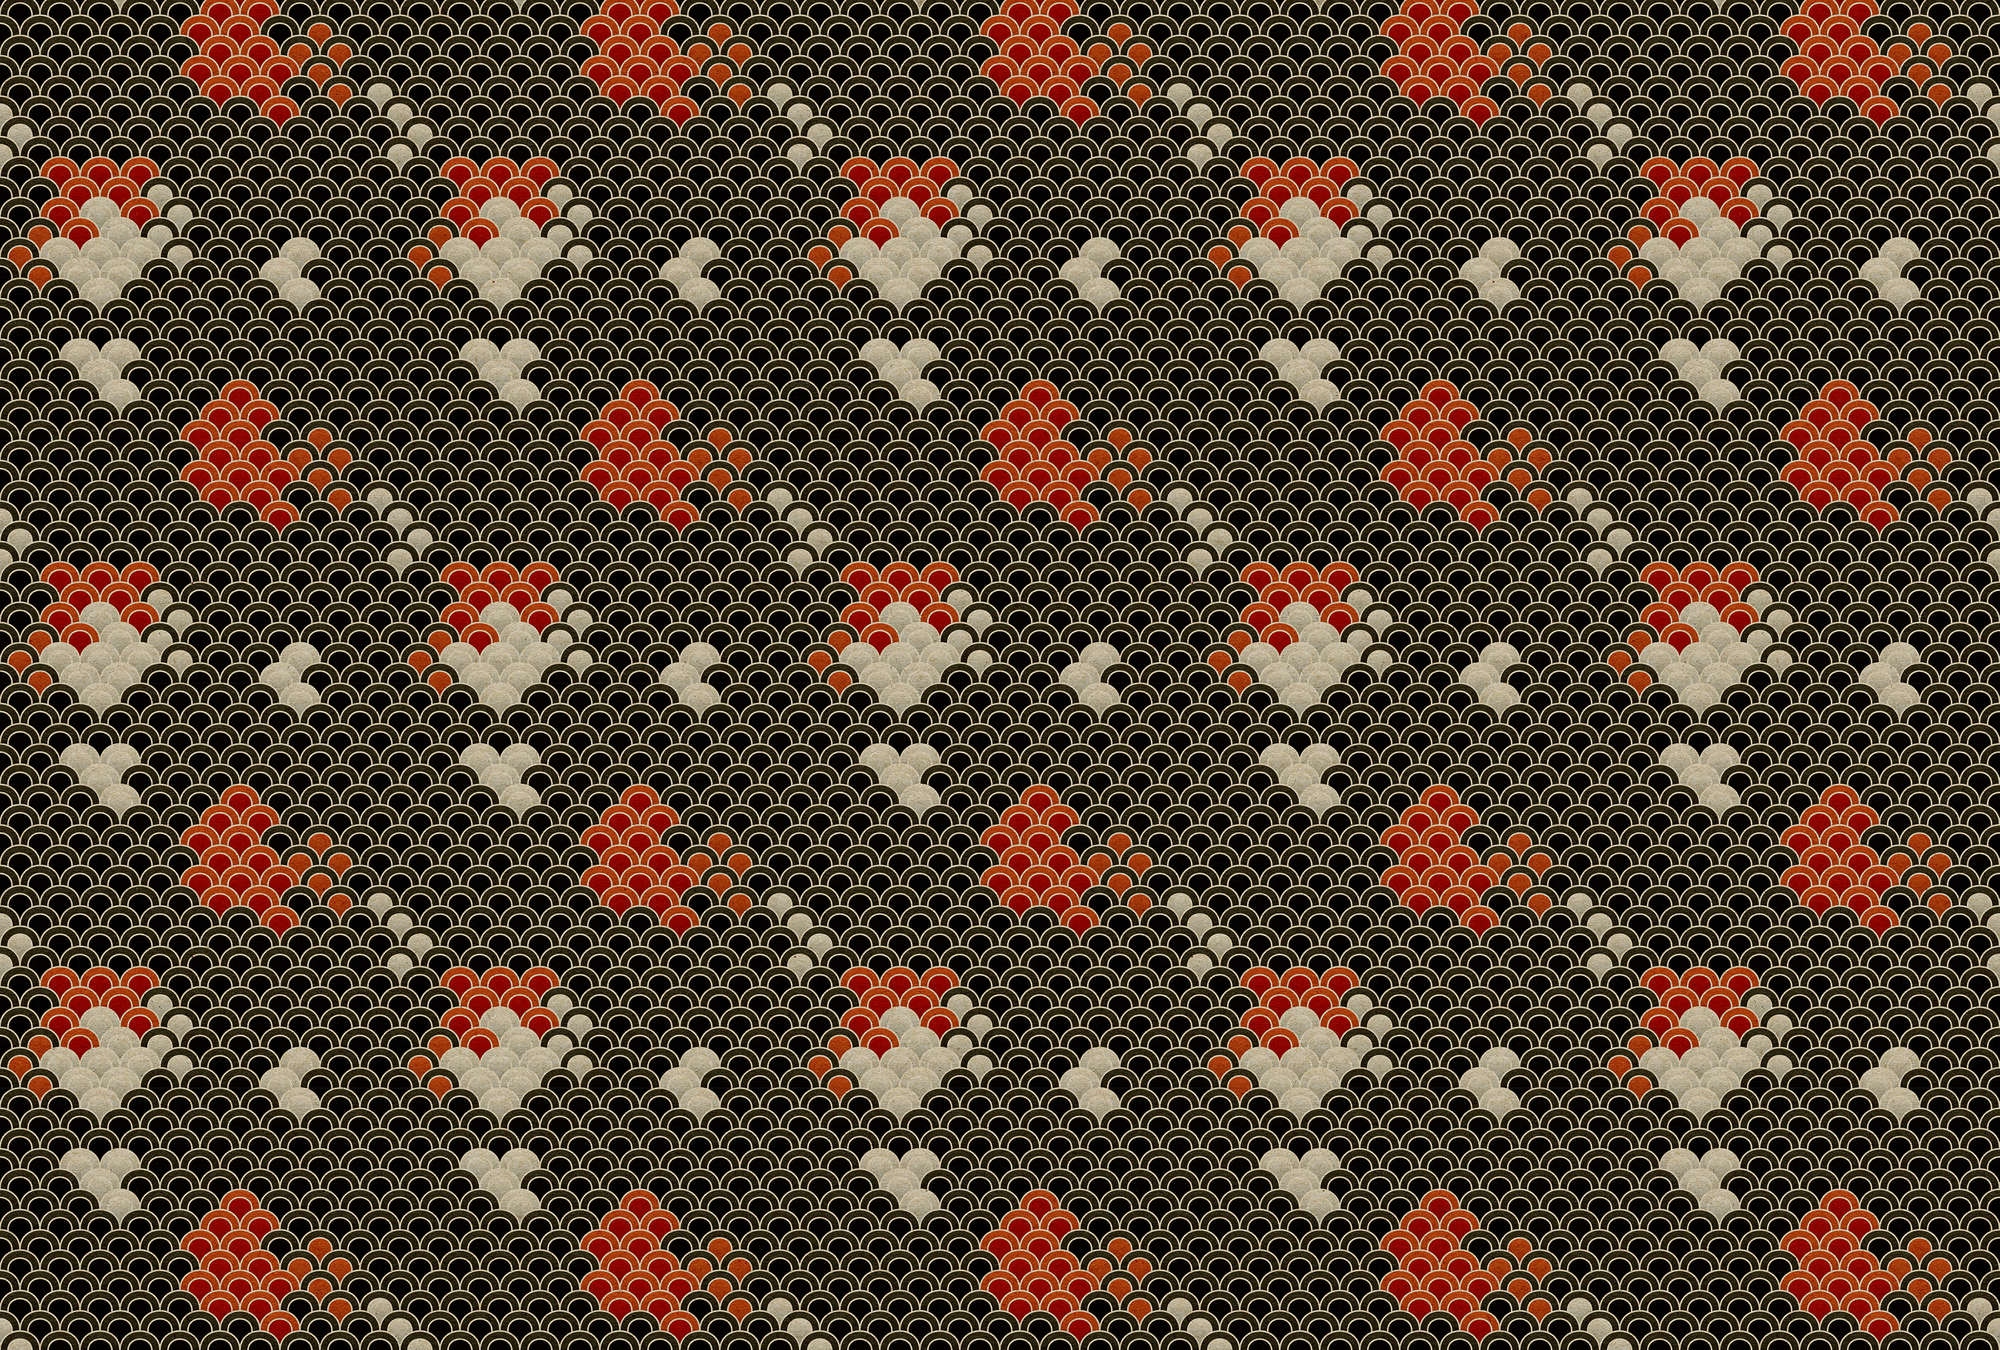             Koi 1 - Papel Pintado Estanque Koi Oscuro - Estructura de Cartón - Beige, Rojo | Liso Perlado
        